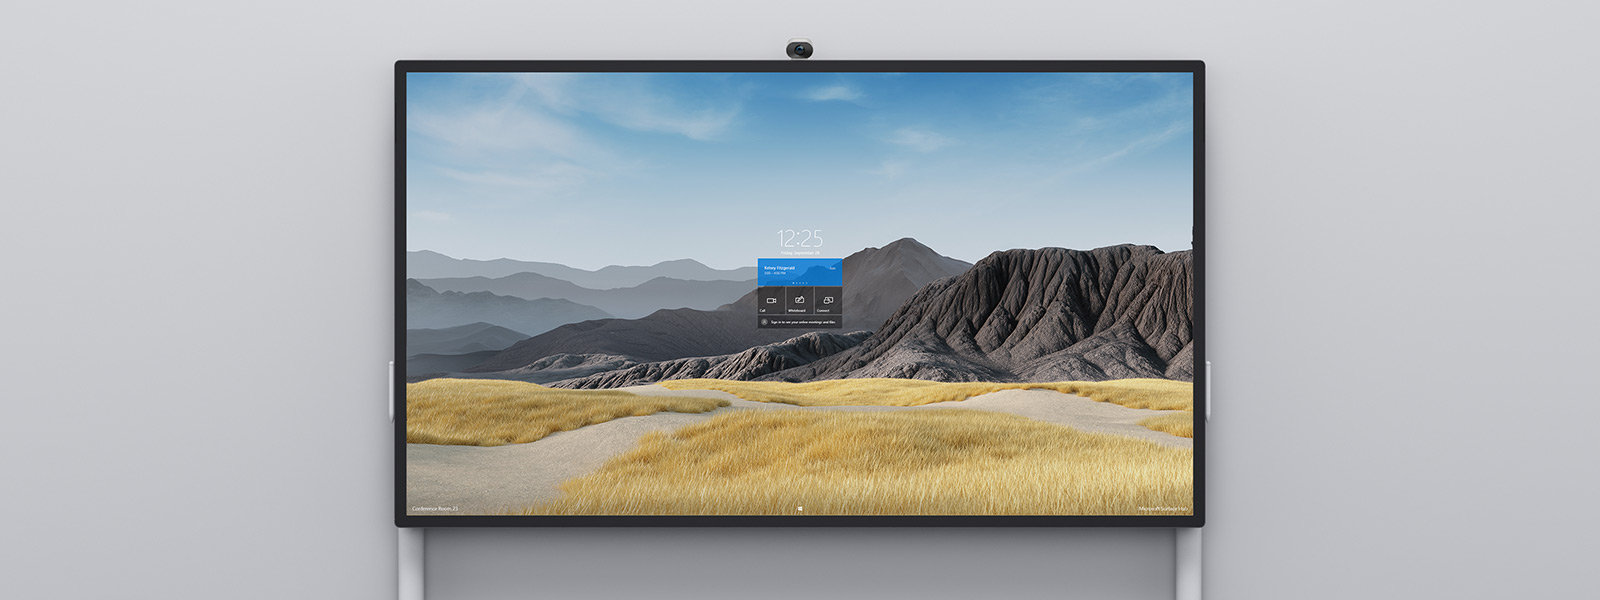 يستخدم جهاز Surface Hub 2S بشاشة حجمها 85 بوصة للمشاهدة